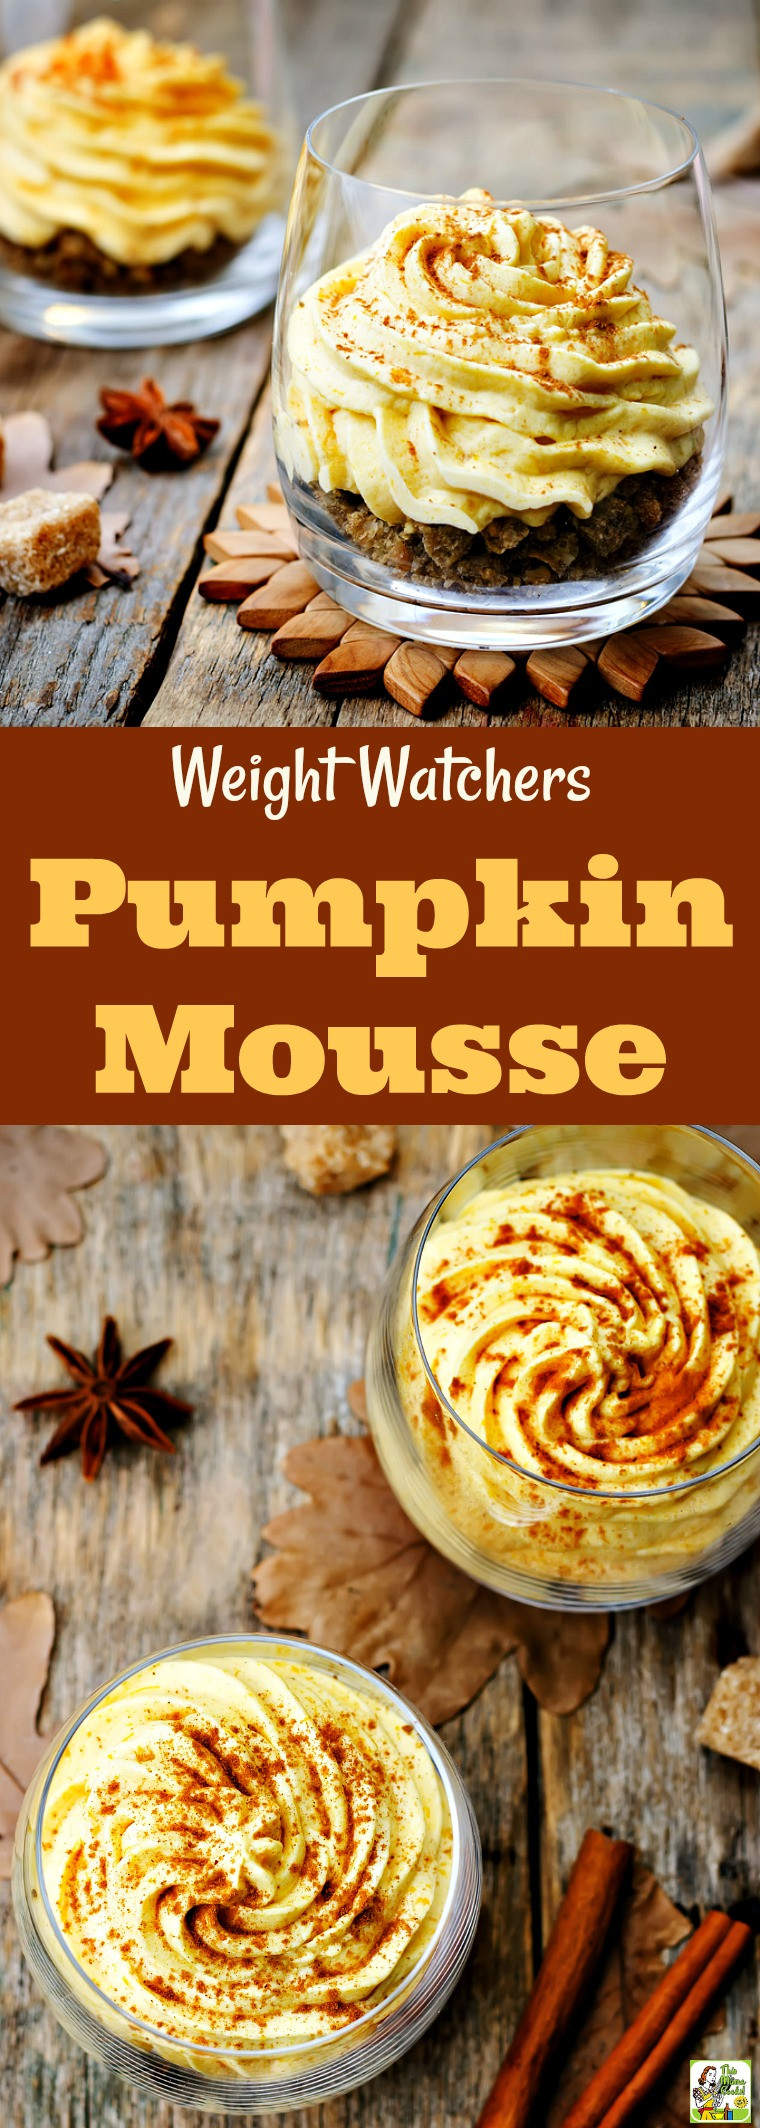 Weight Watcher Pumpkin Mousse
 Weight Watchers Pumpkin Mousse Recipe